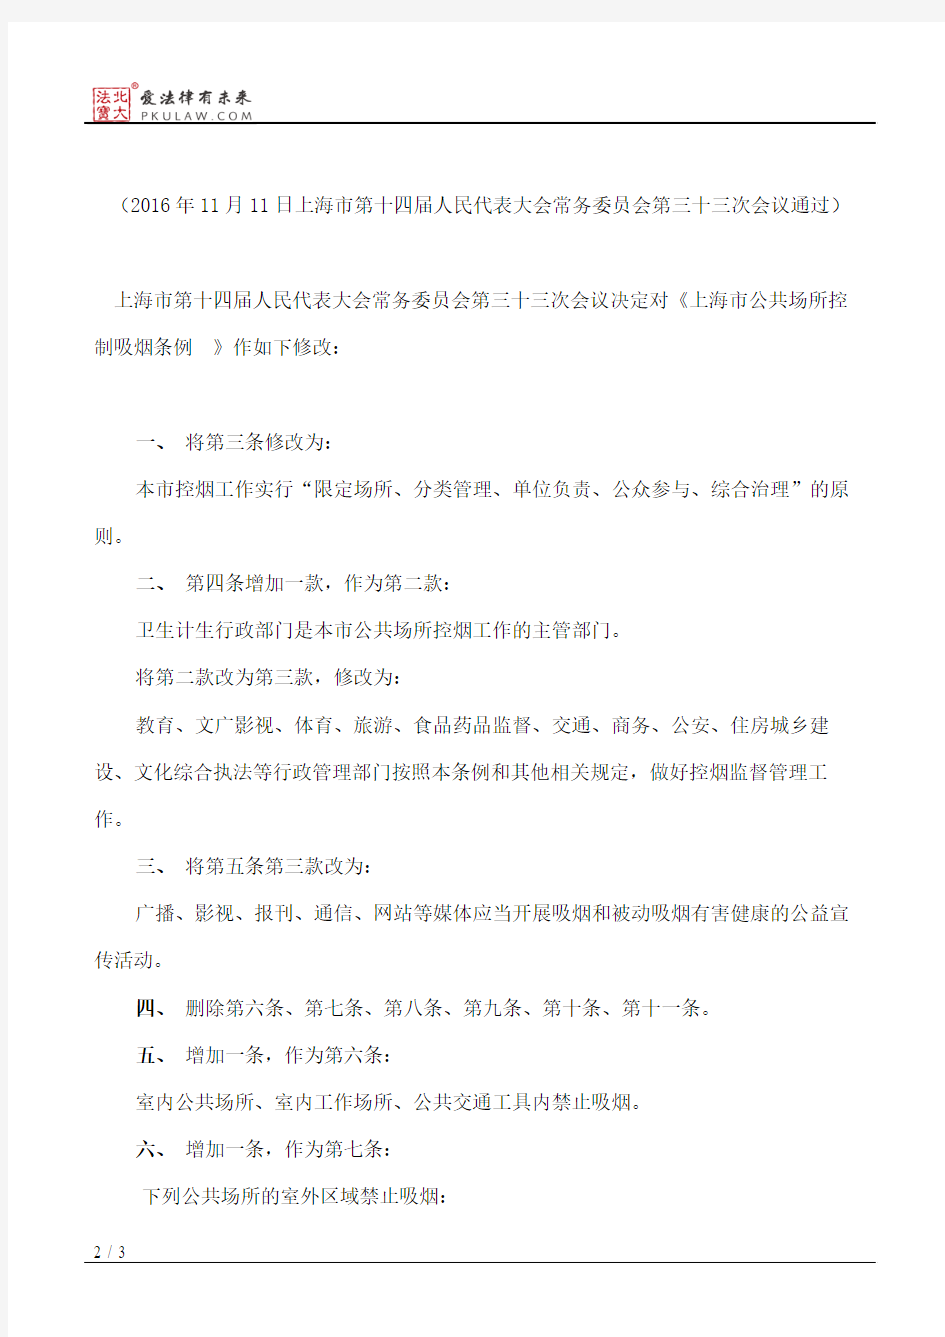 上海市人大常委会关于修改《上海市公共场所控制吸烟条例》的决定(2016)